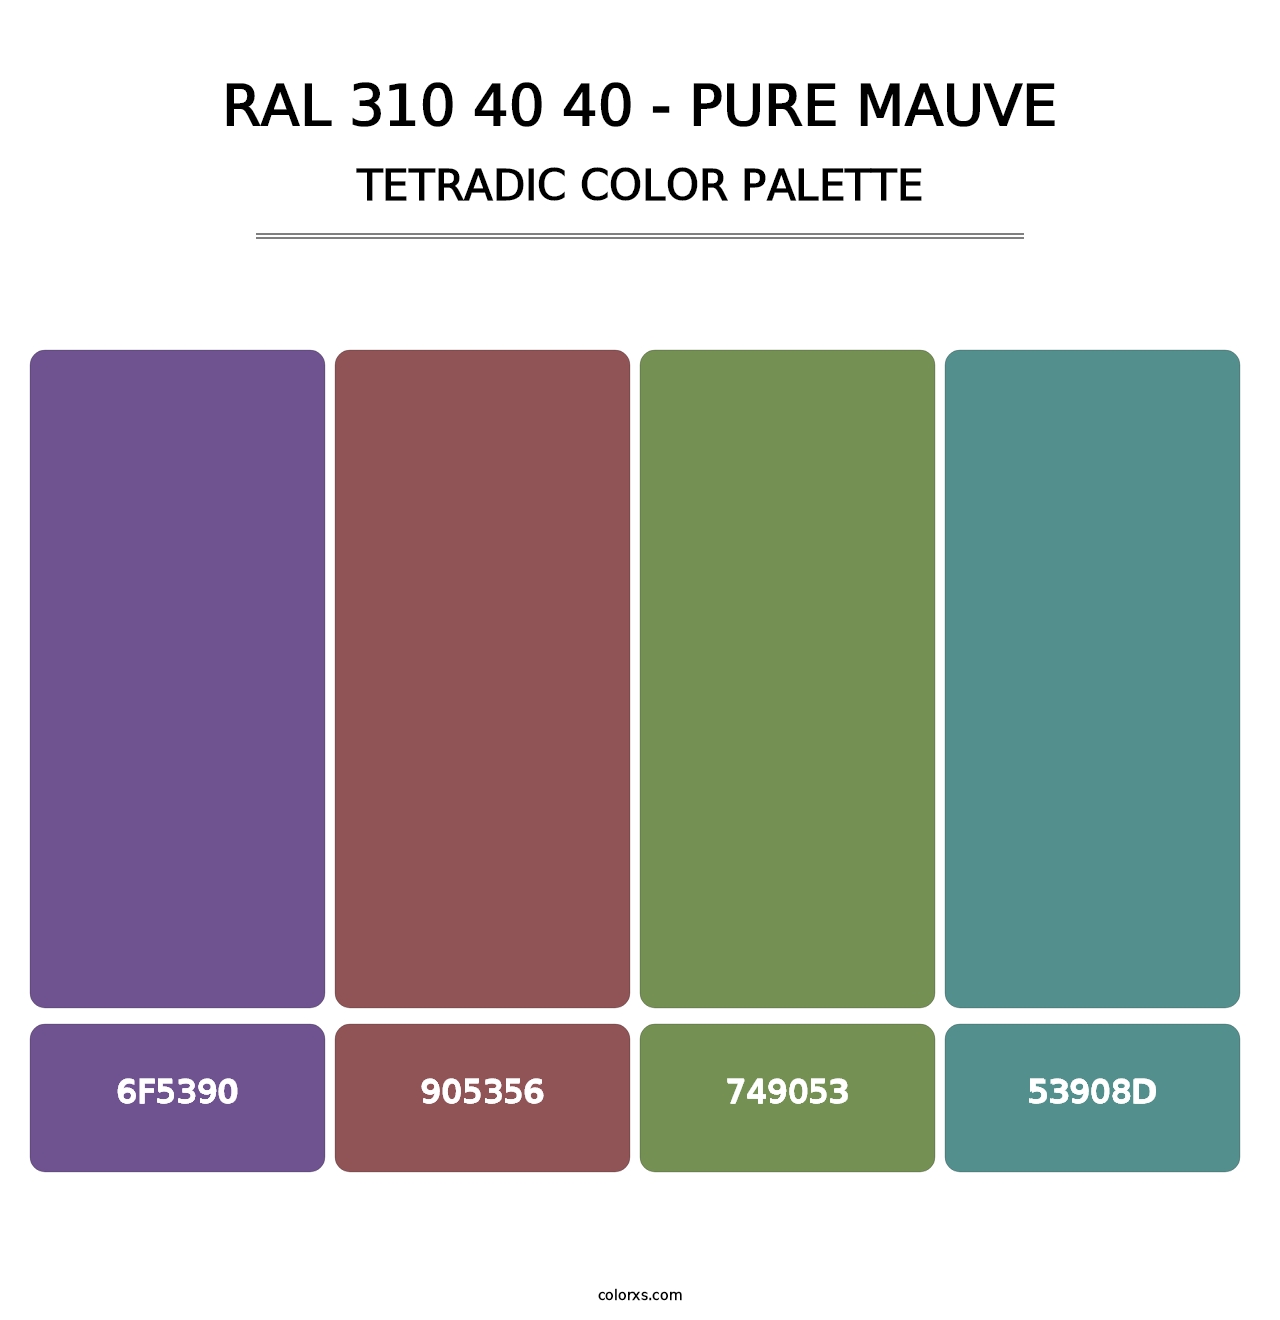 RAL 310 40 40 - Pure Mauve - Tetradic Color Palette